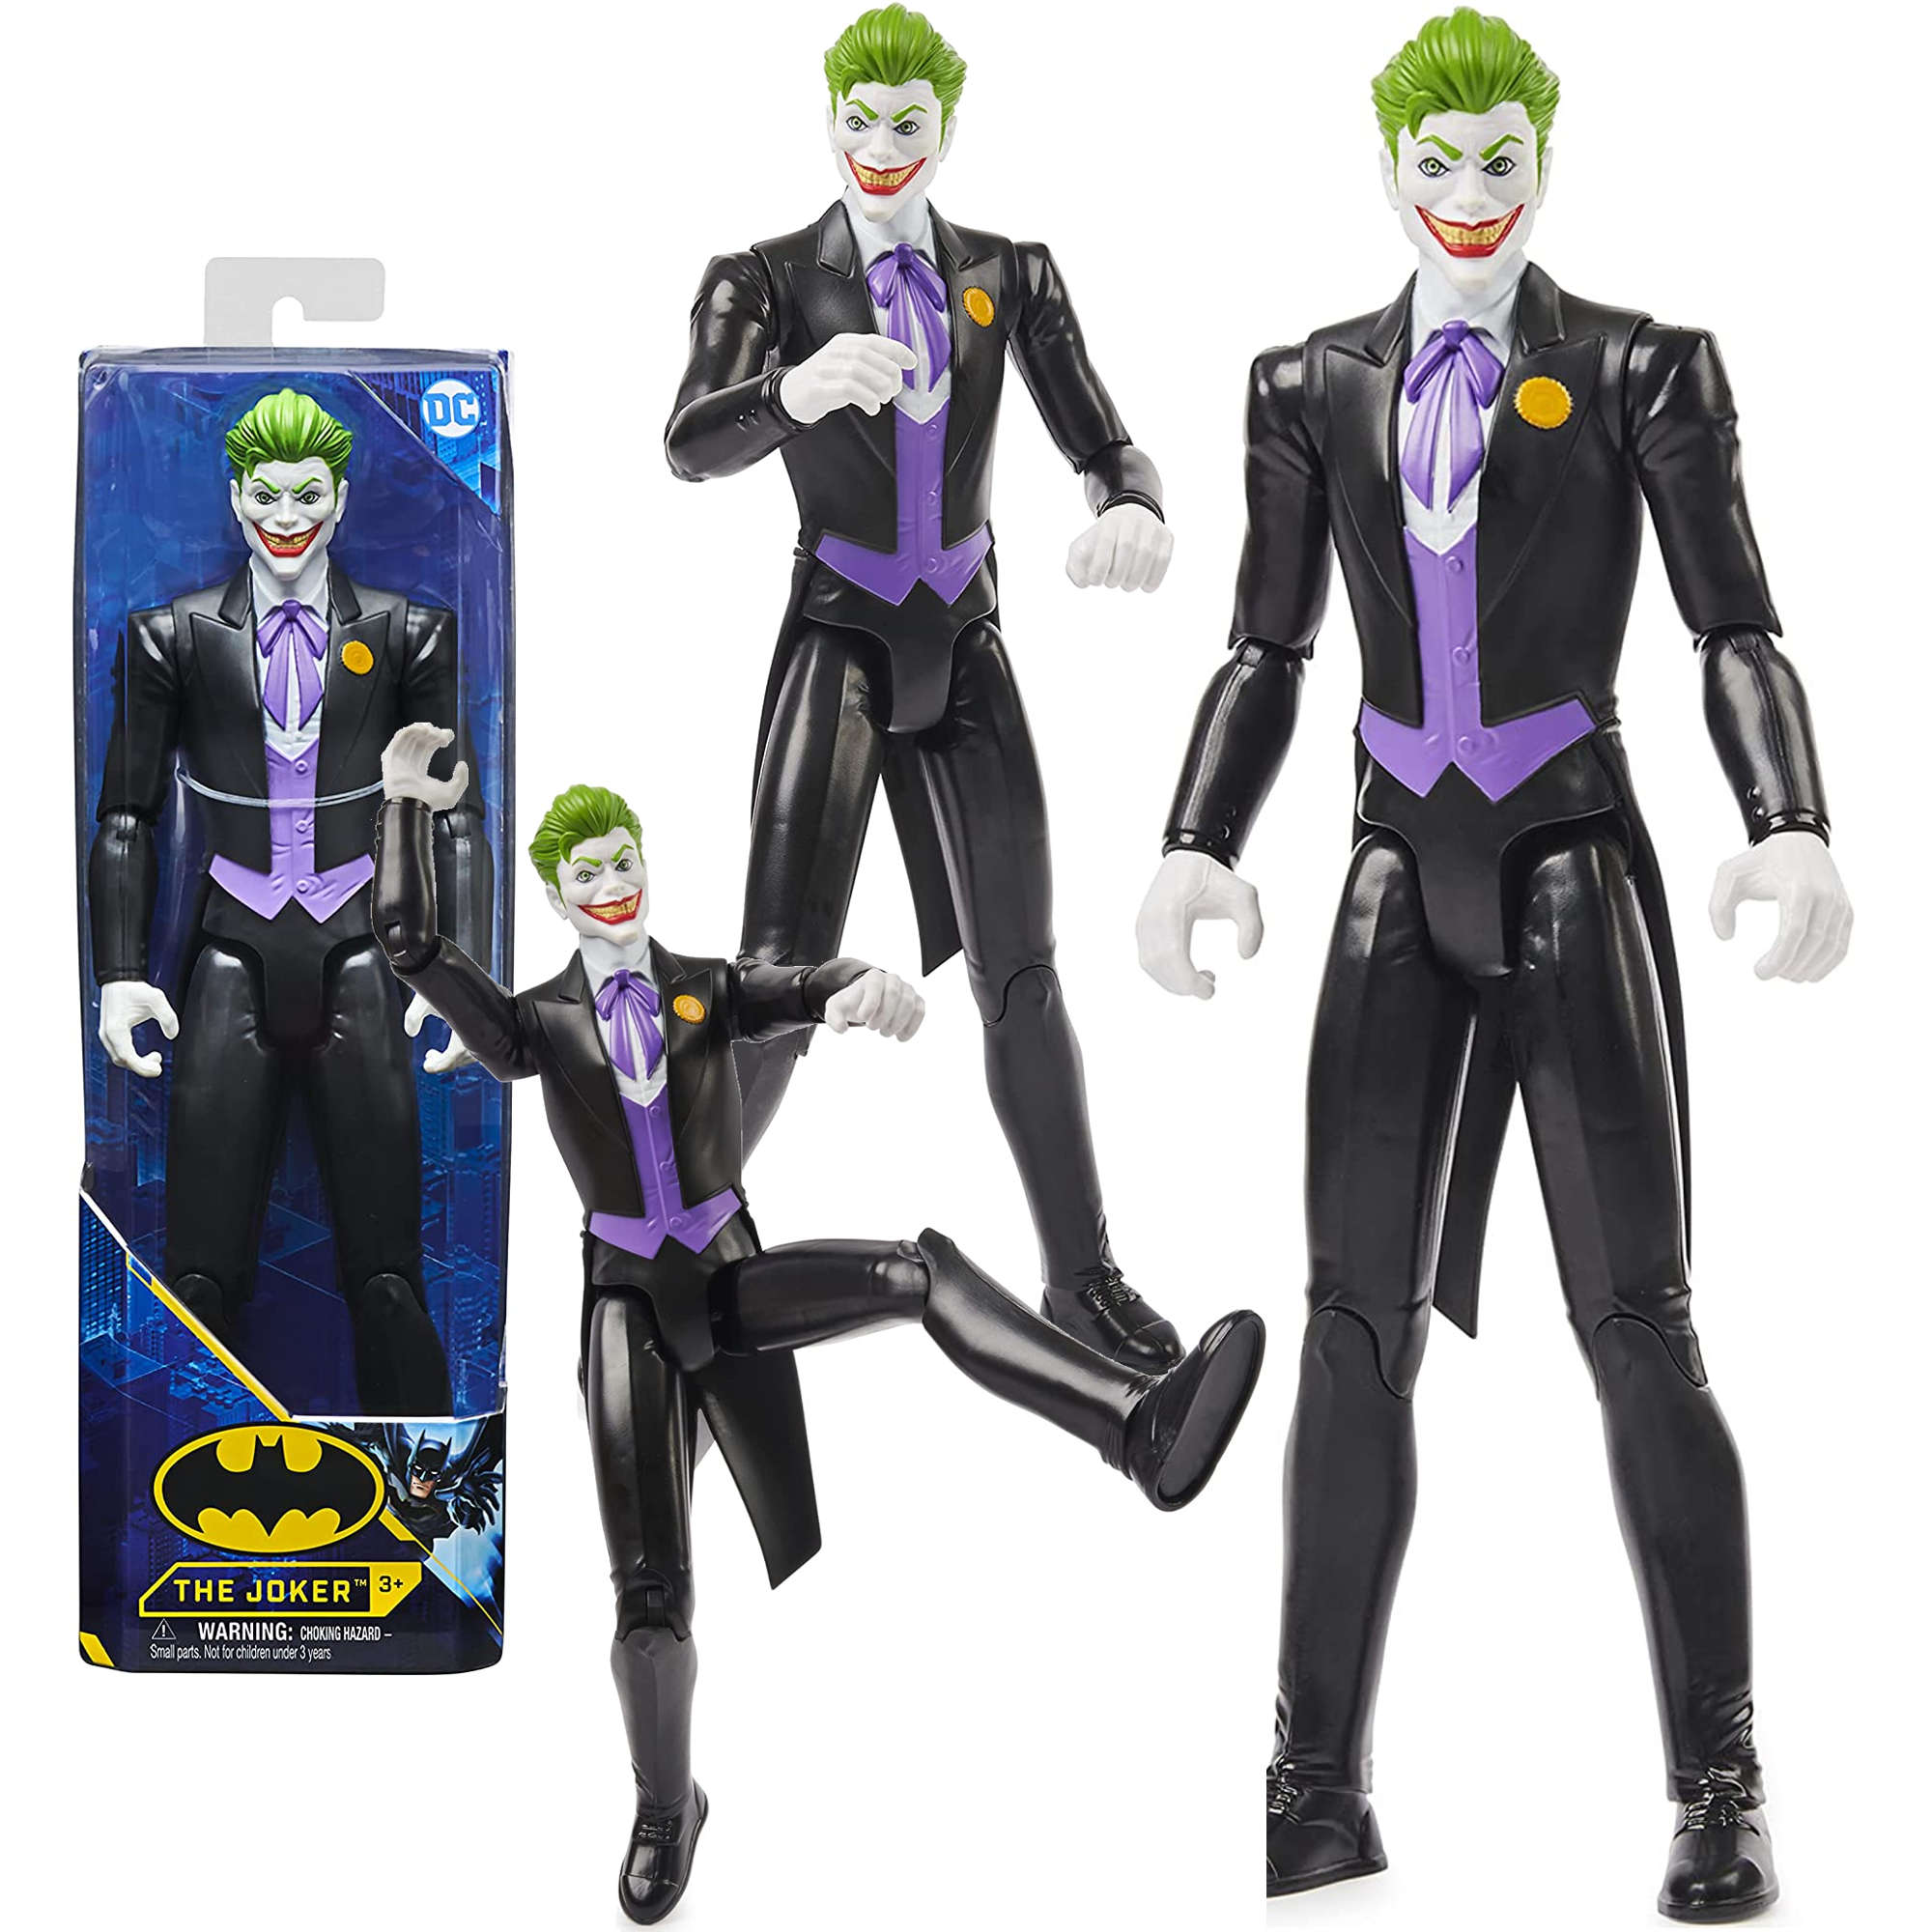 Batman du¿a figurka The Joker 30 cm Spin Master